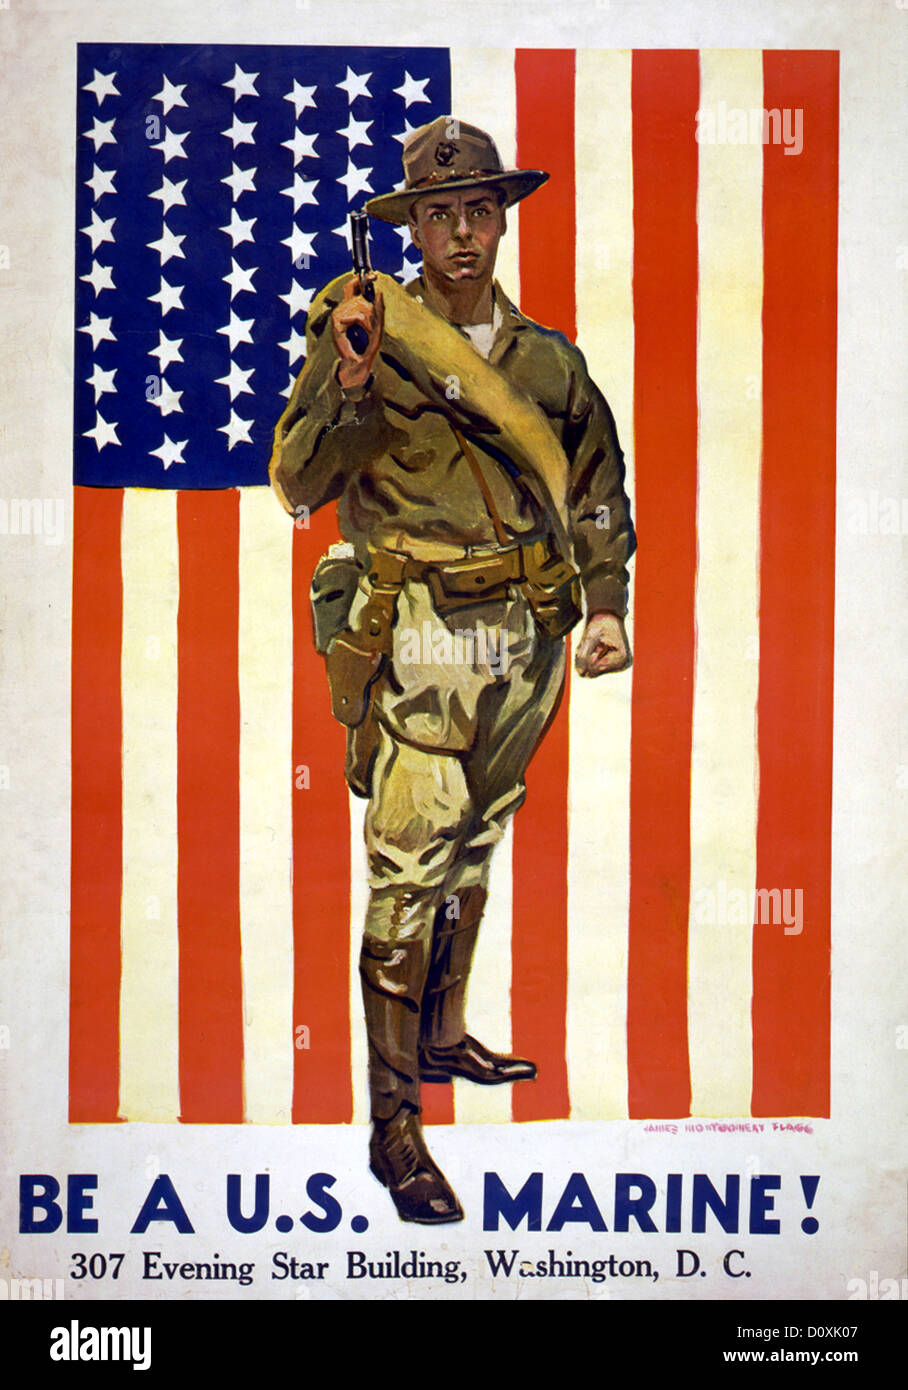 La I Guerra Mundial, la propaganda estadounidense, póster, EE.UU., soldado, bandera, marines, reclutamiento, Foto de stock